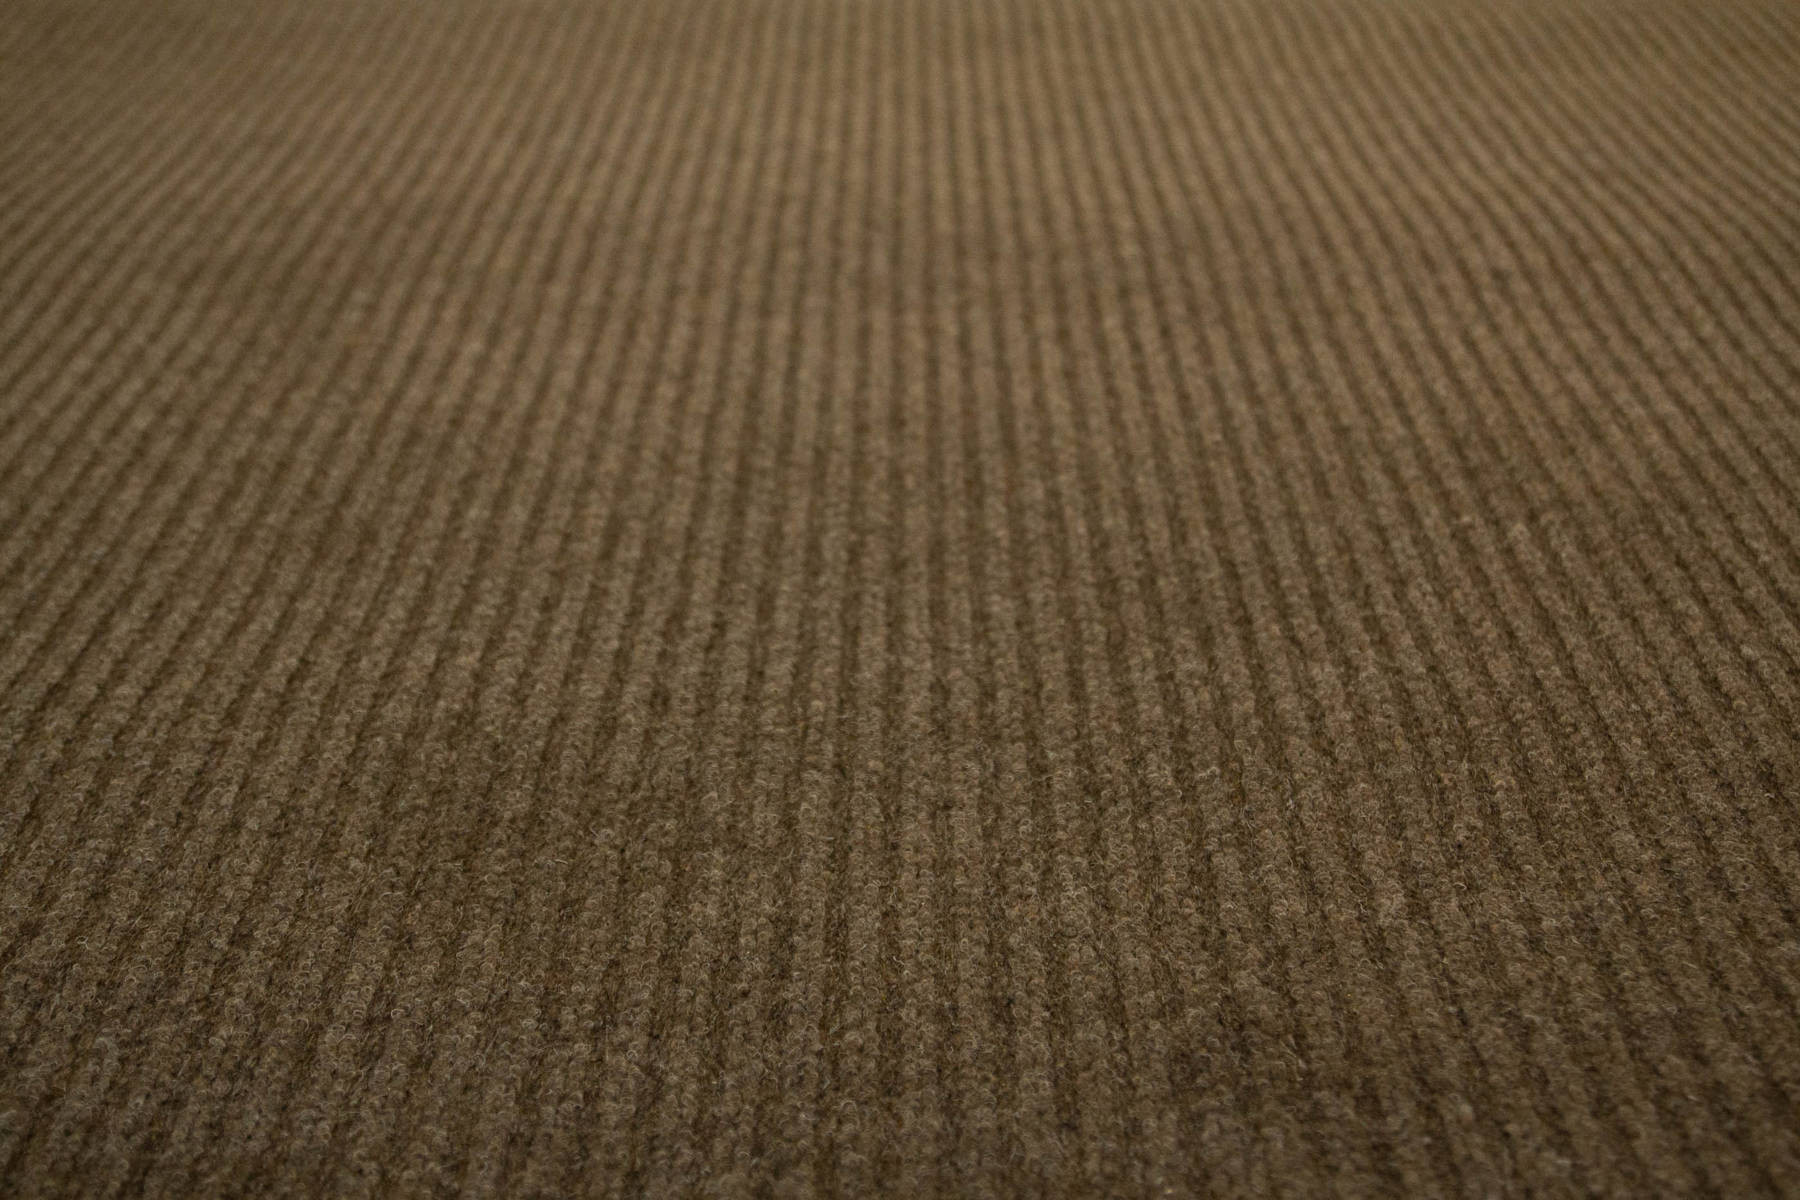 Metrážový koberec Duo 93 hnědý